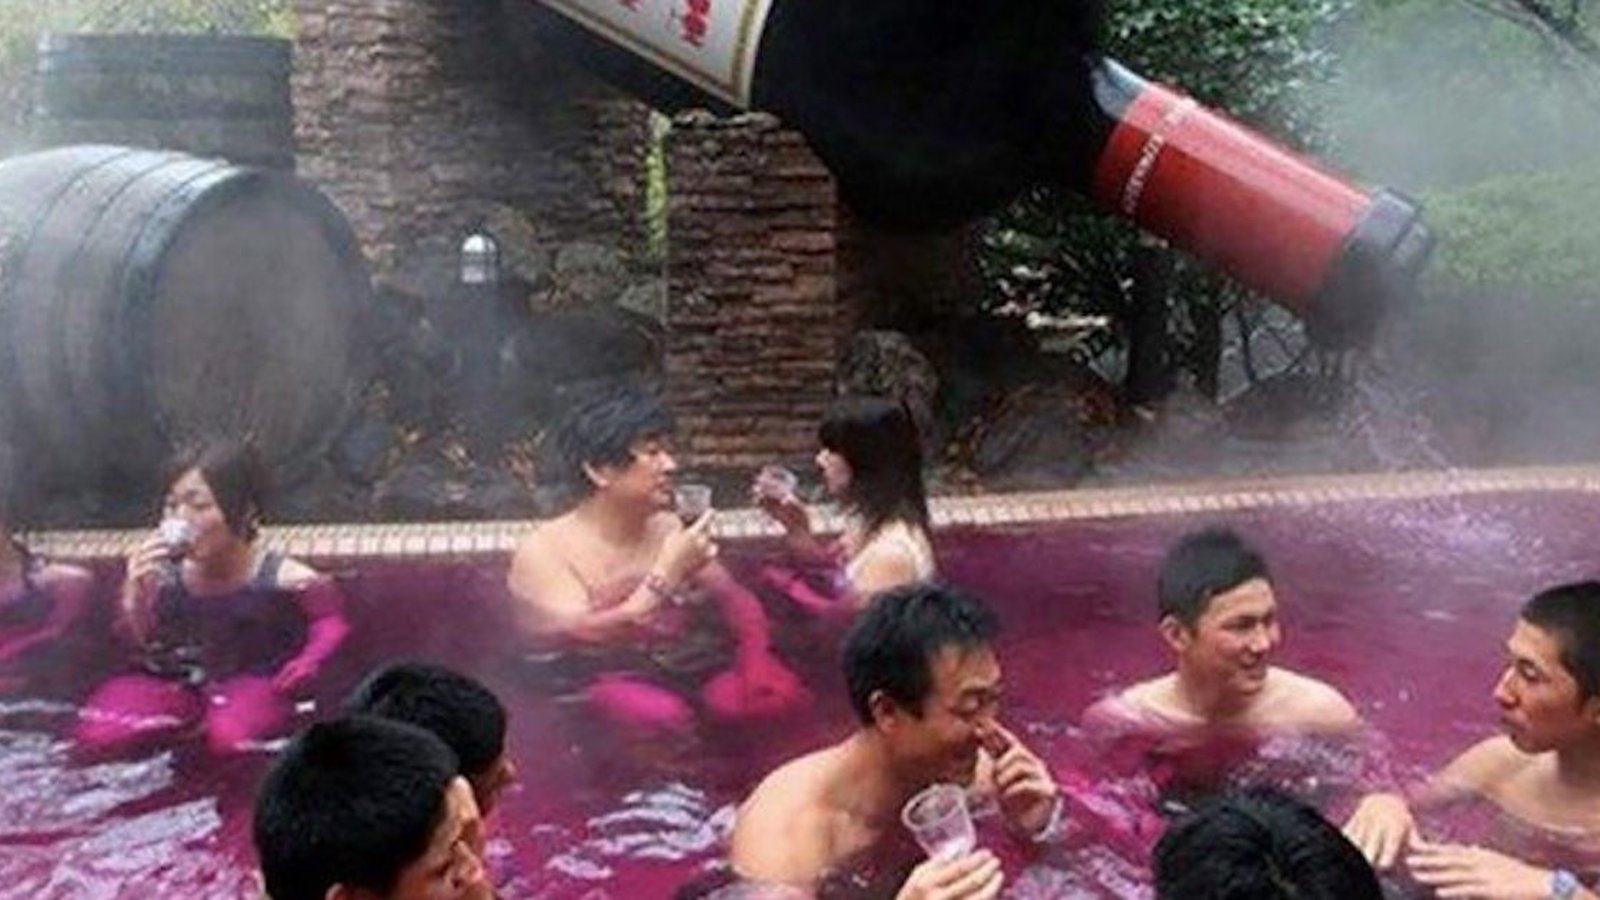 In Giappone una spa offre ai propri clienti la possibilità di fare il bagno nel... vino!